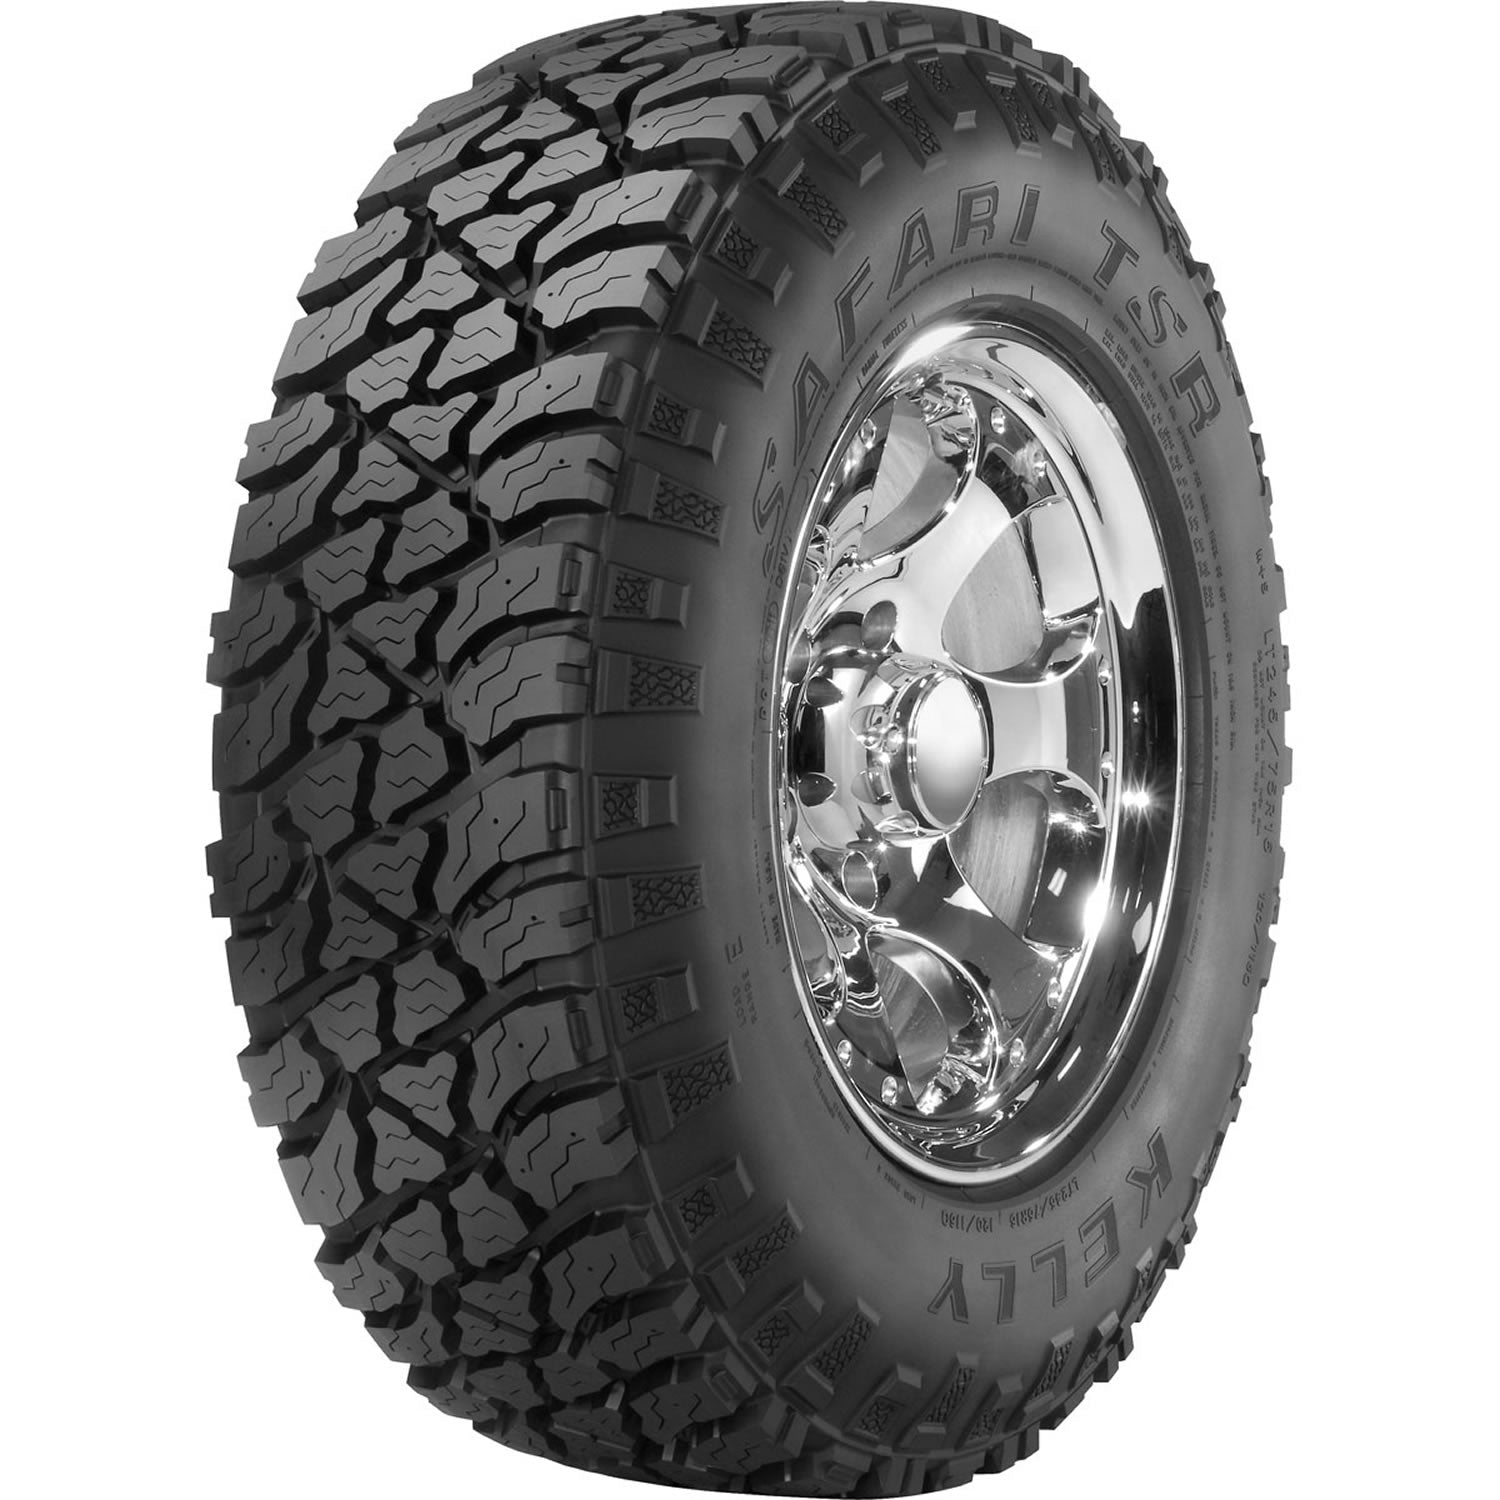 KELLY SAFARI TSR 31X10.50R15LT Tires